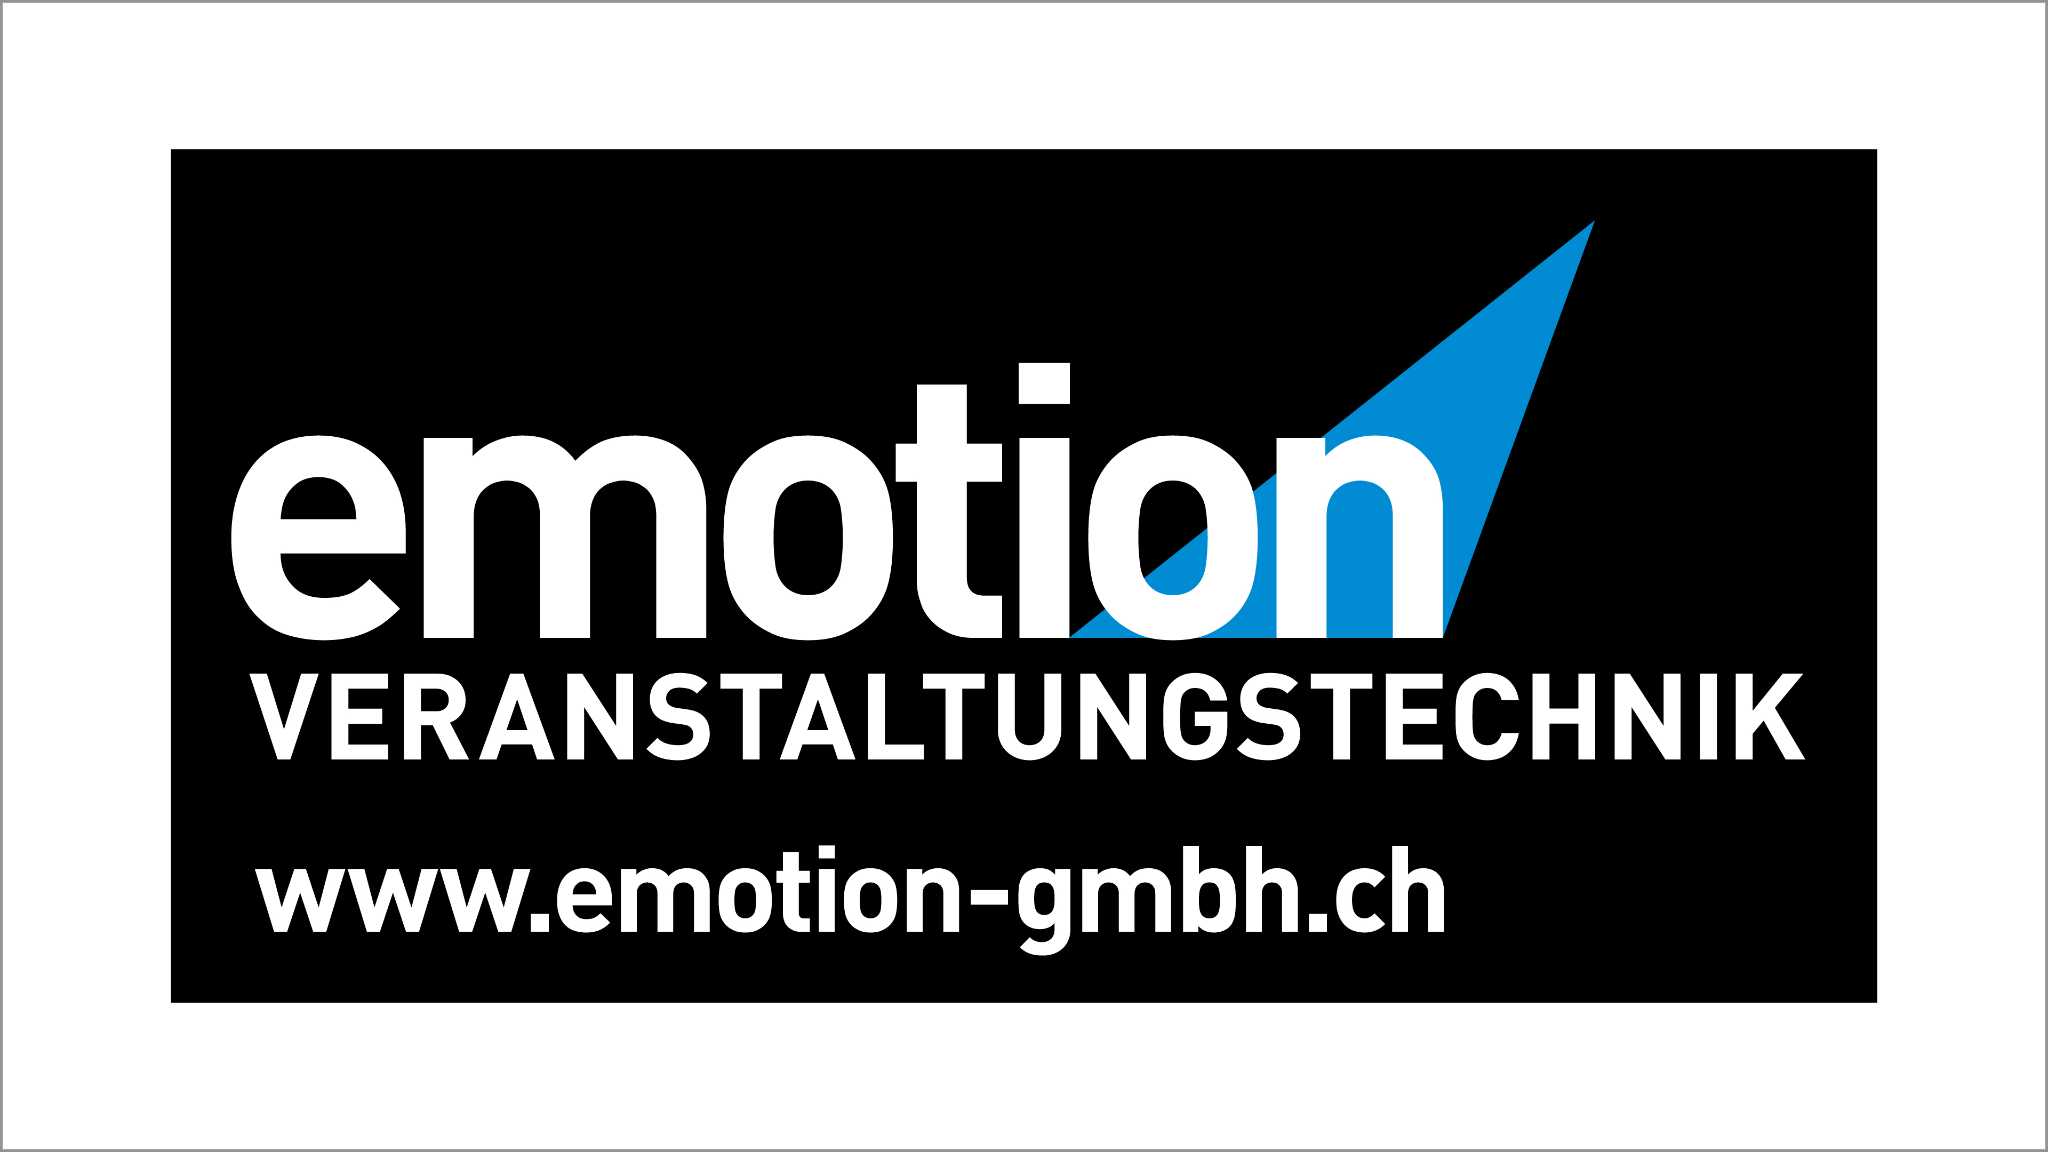 Emotion Veranstaltungstechnik GmbH